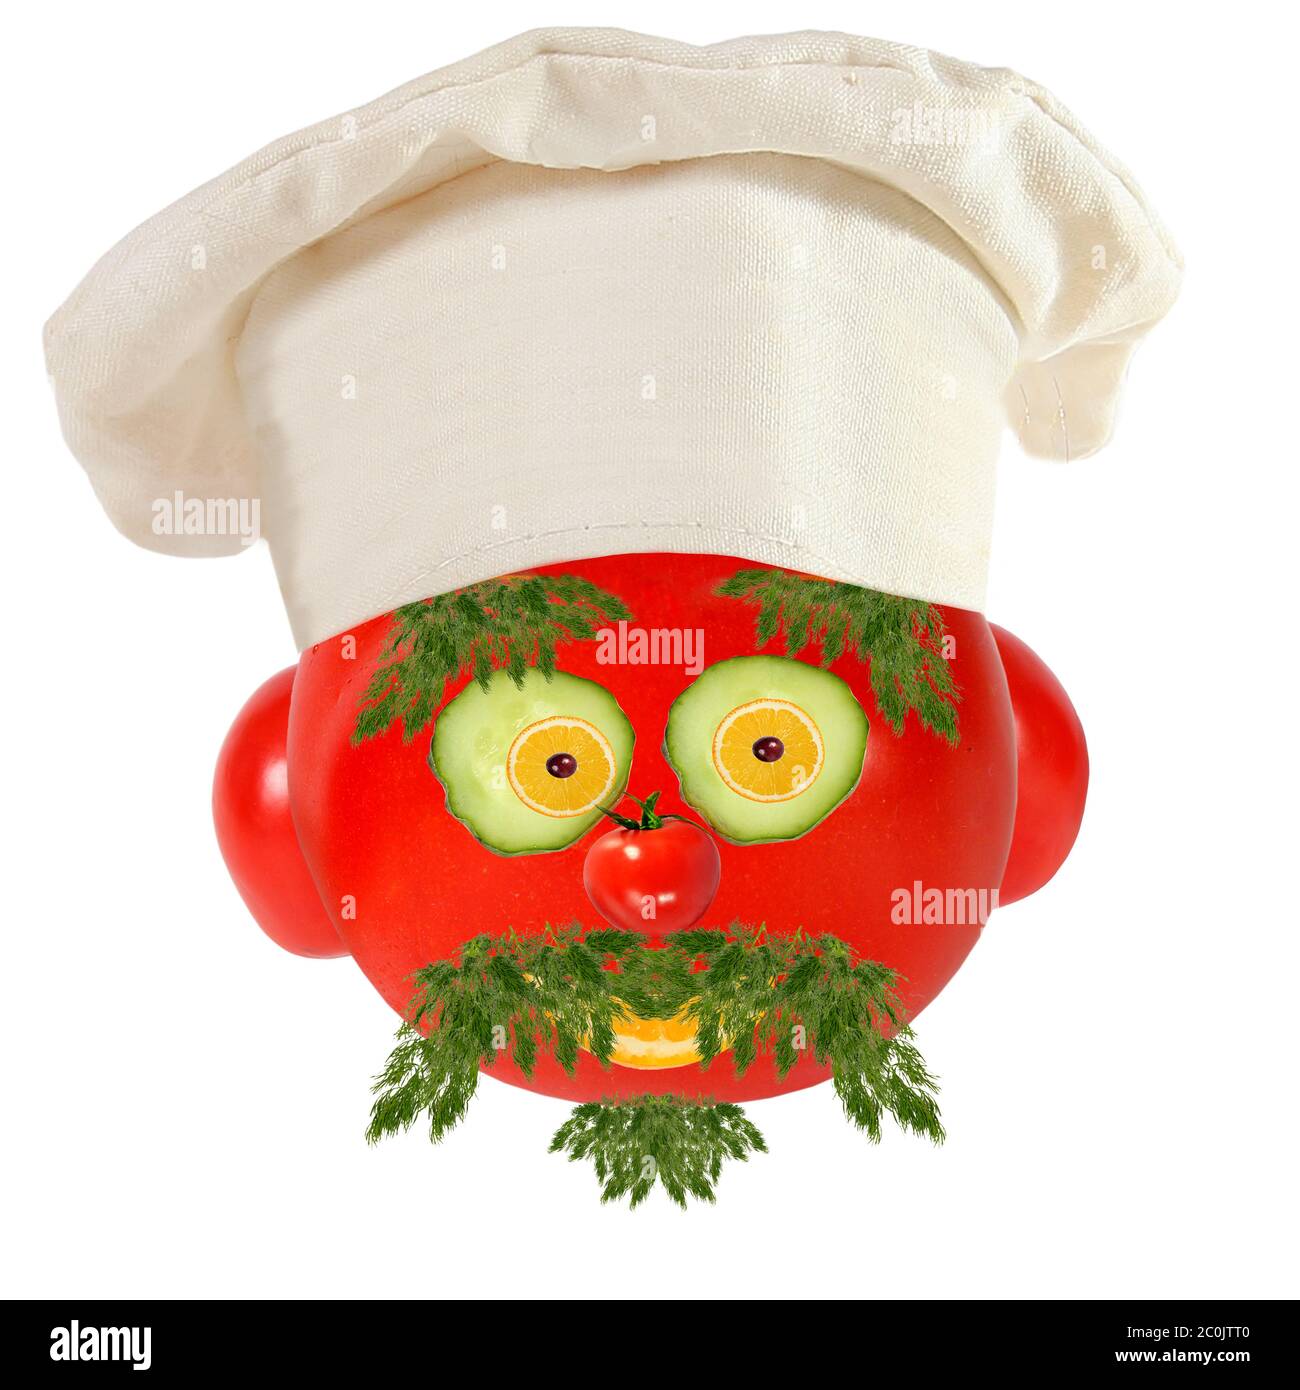 Concept de cuisine créative. Portrait amusant d'un cuisinier, fait de tomates, de fruits et de légumes Banque D'Images